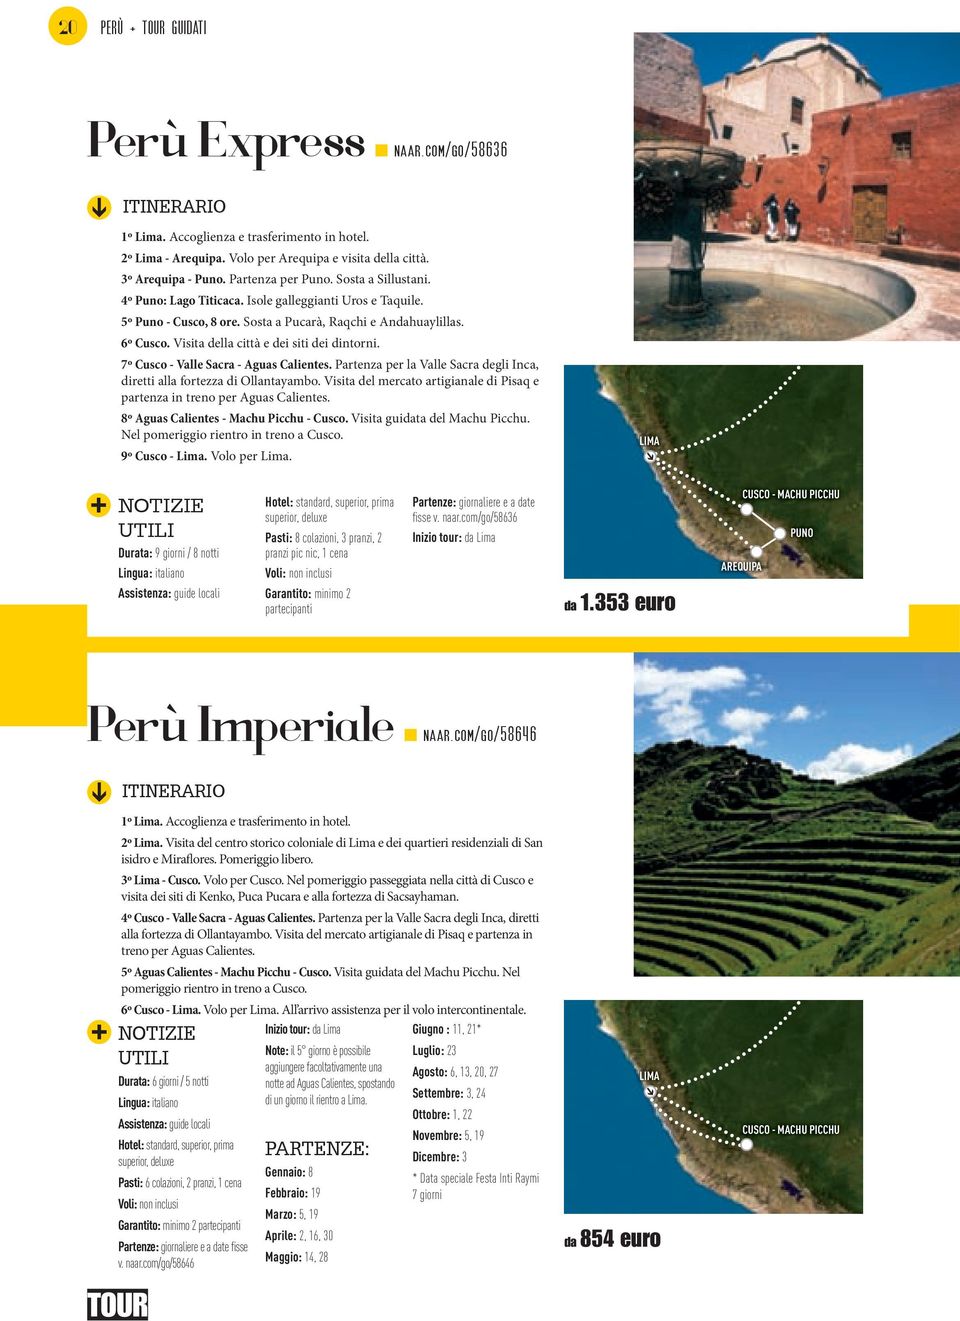 Visita della città e dei siti dei dintorni. 7º Cusco - Valle Sacra - Aguas Calientes. Partenza per la Valle Sacra degli Inca, diretti alla fortezza di Ollantayambo.